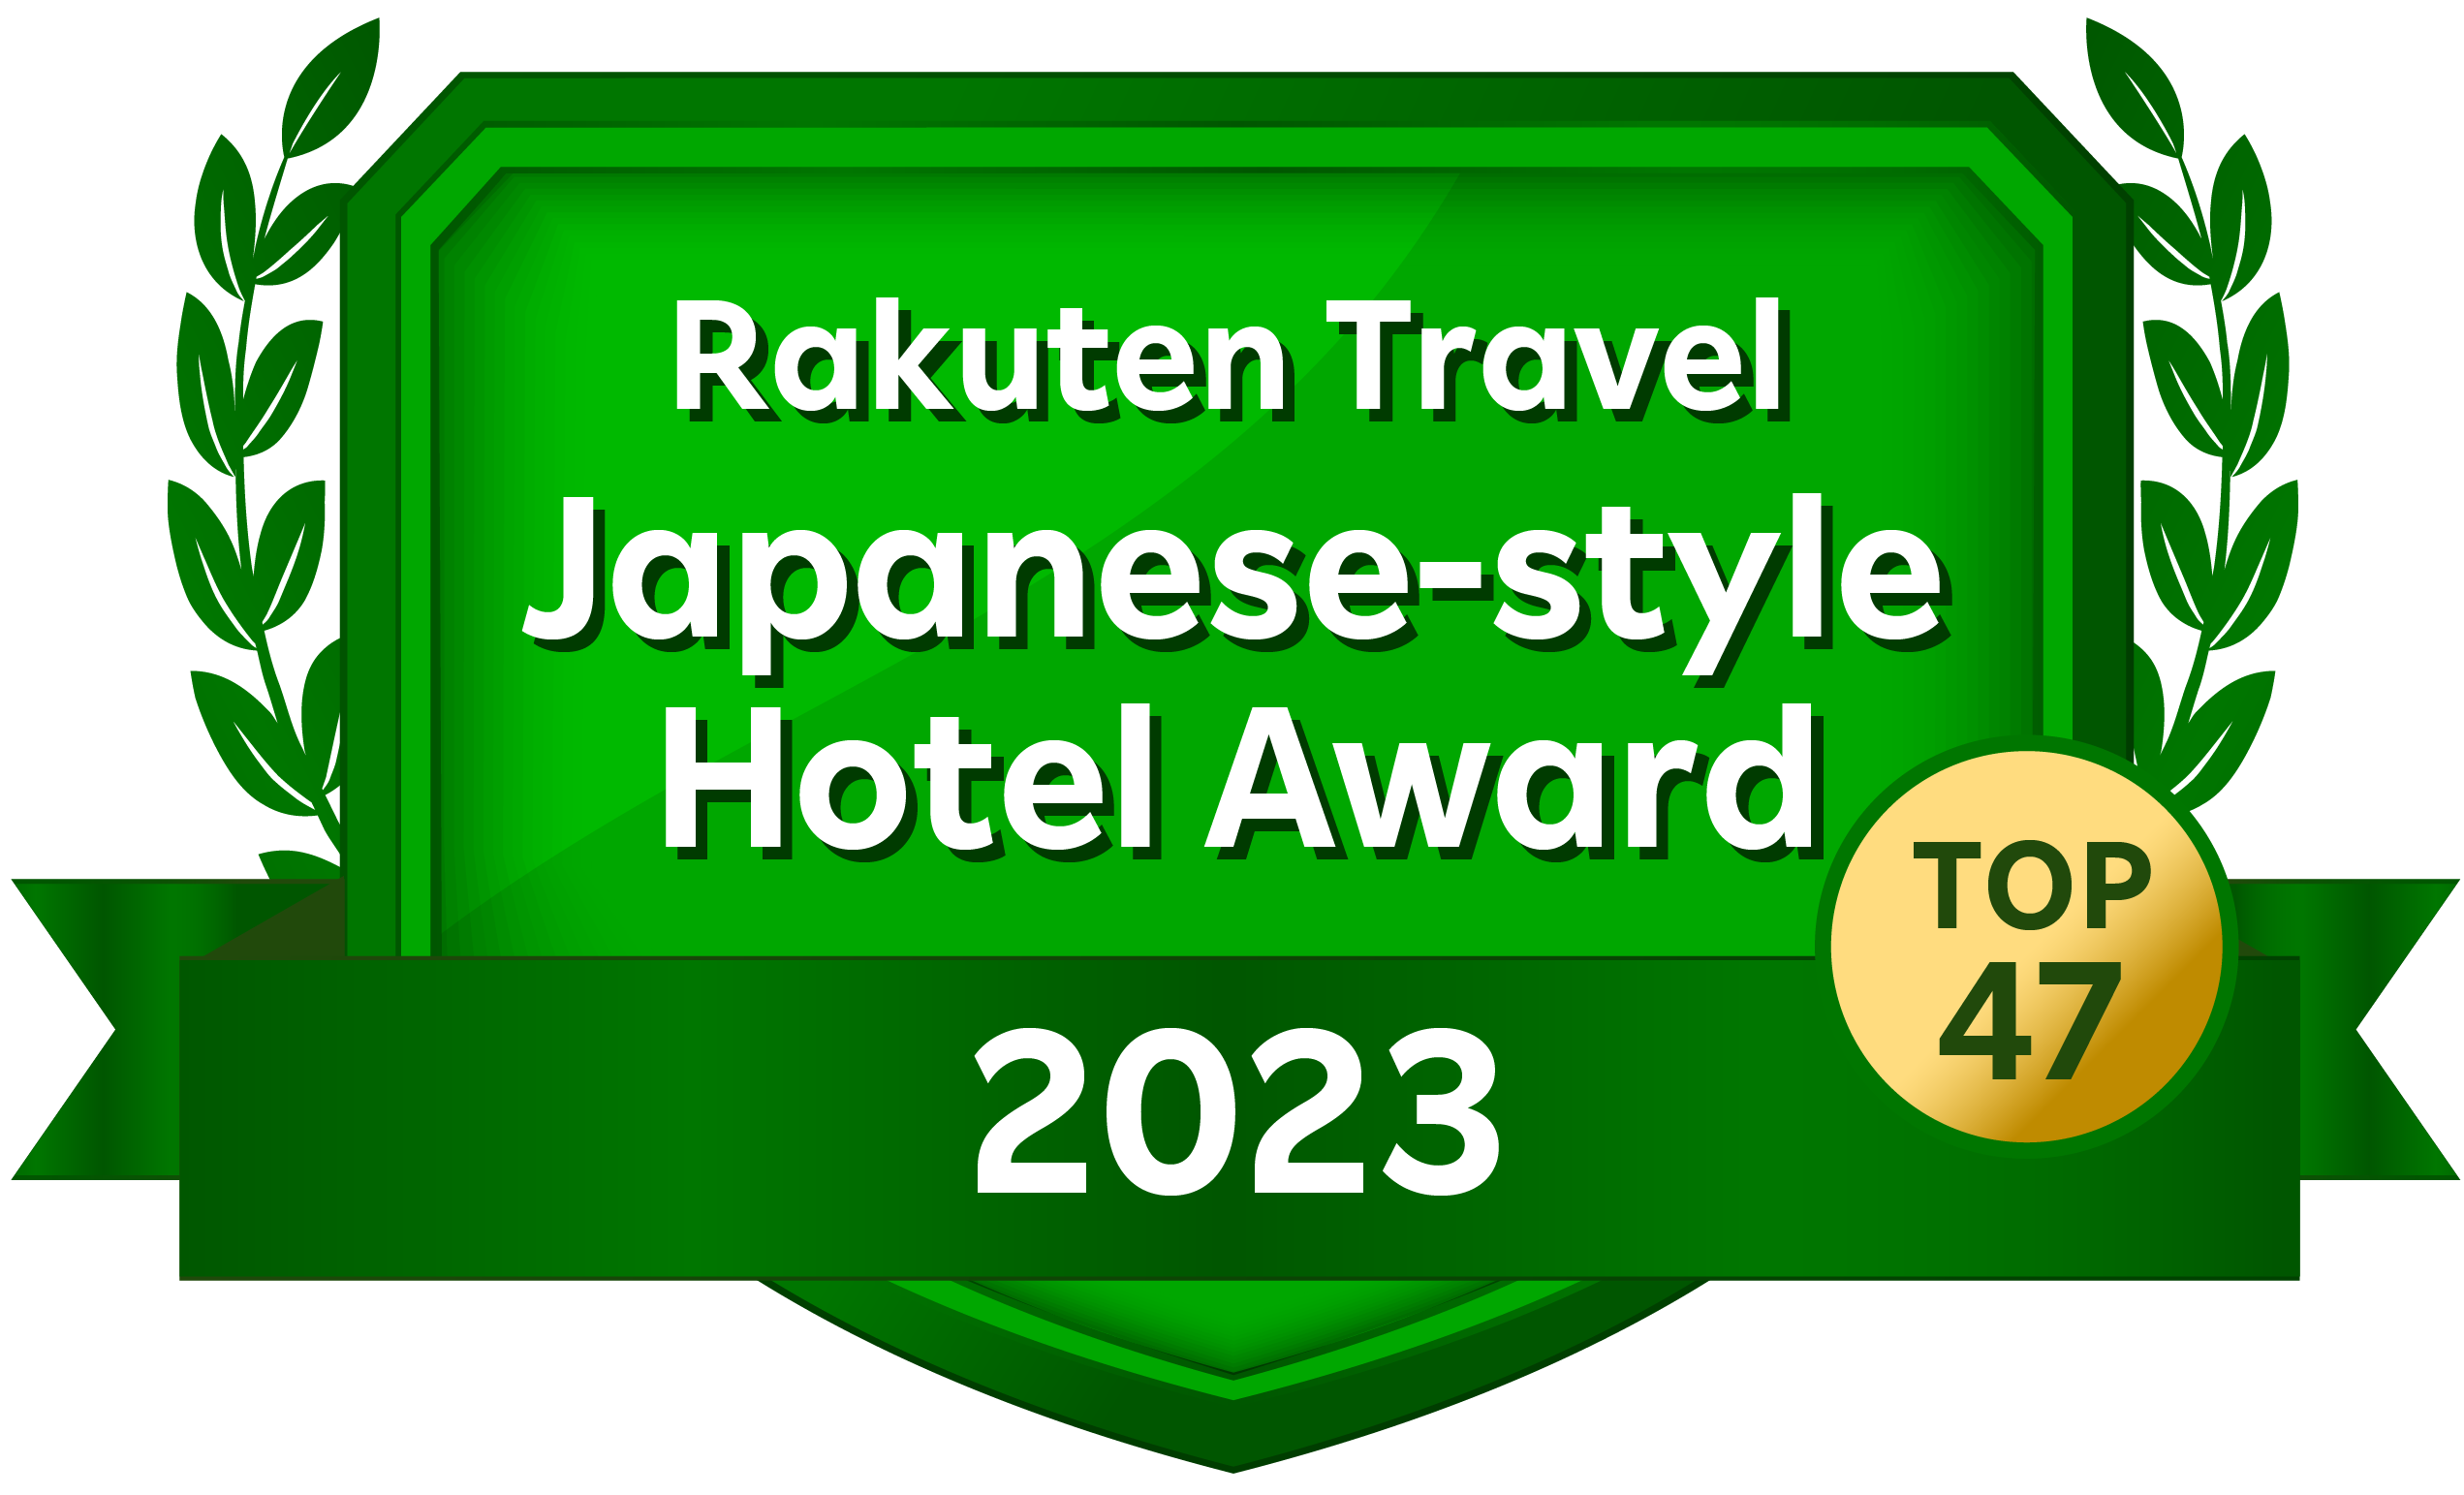 Rakuten Travel Japanese-style Hotel Award 2022